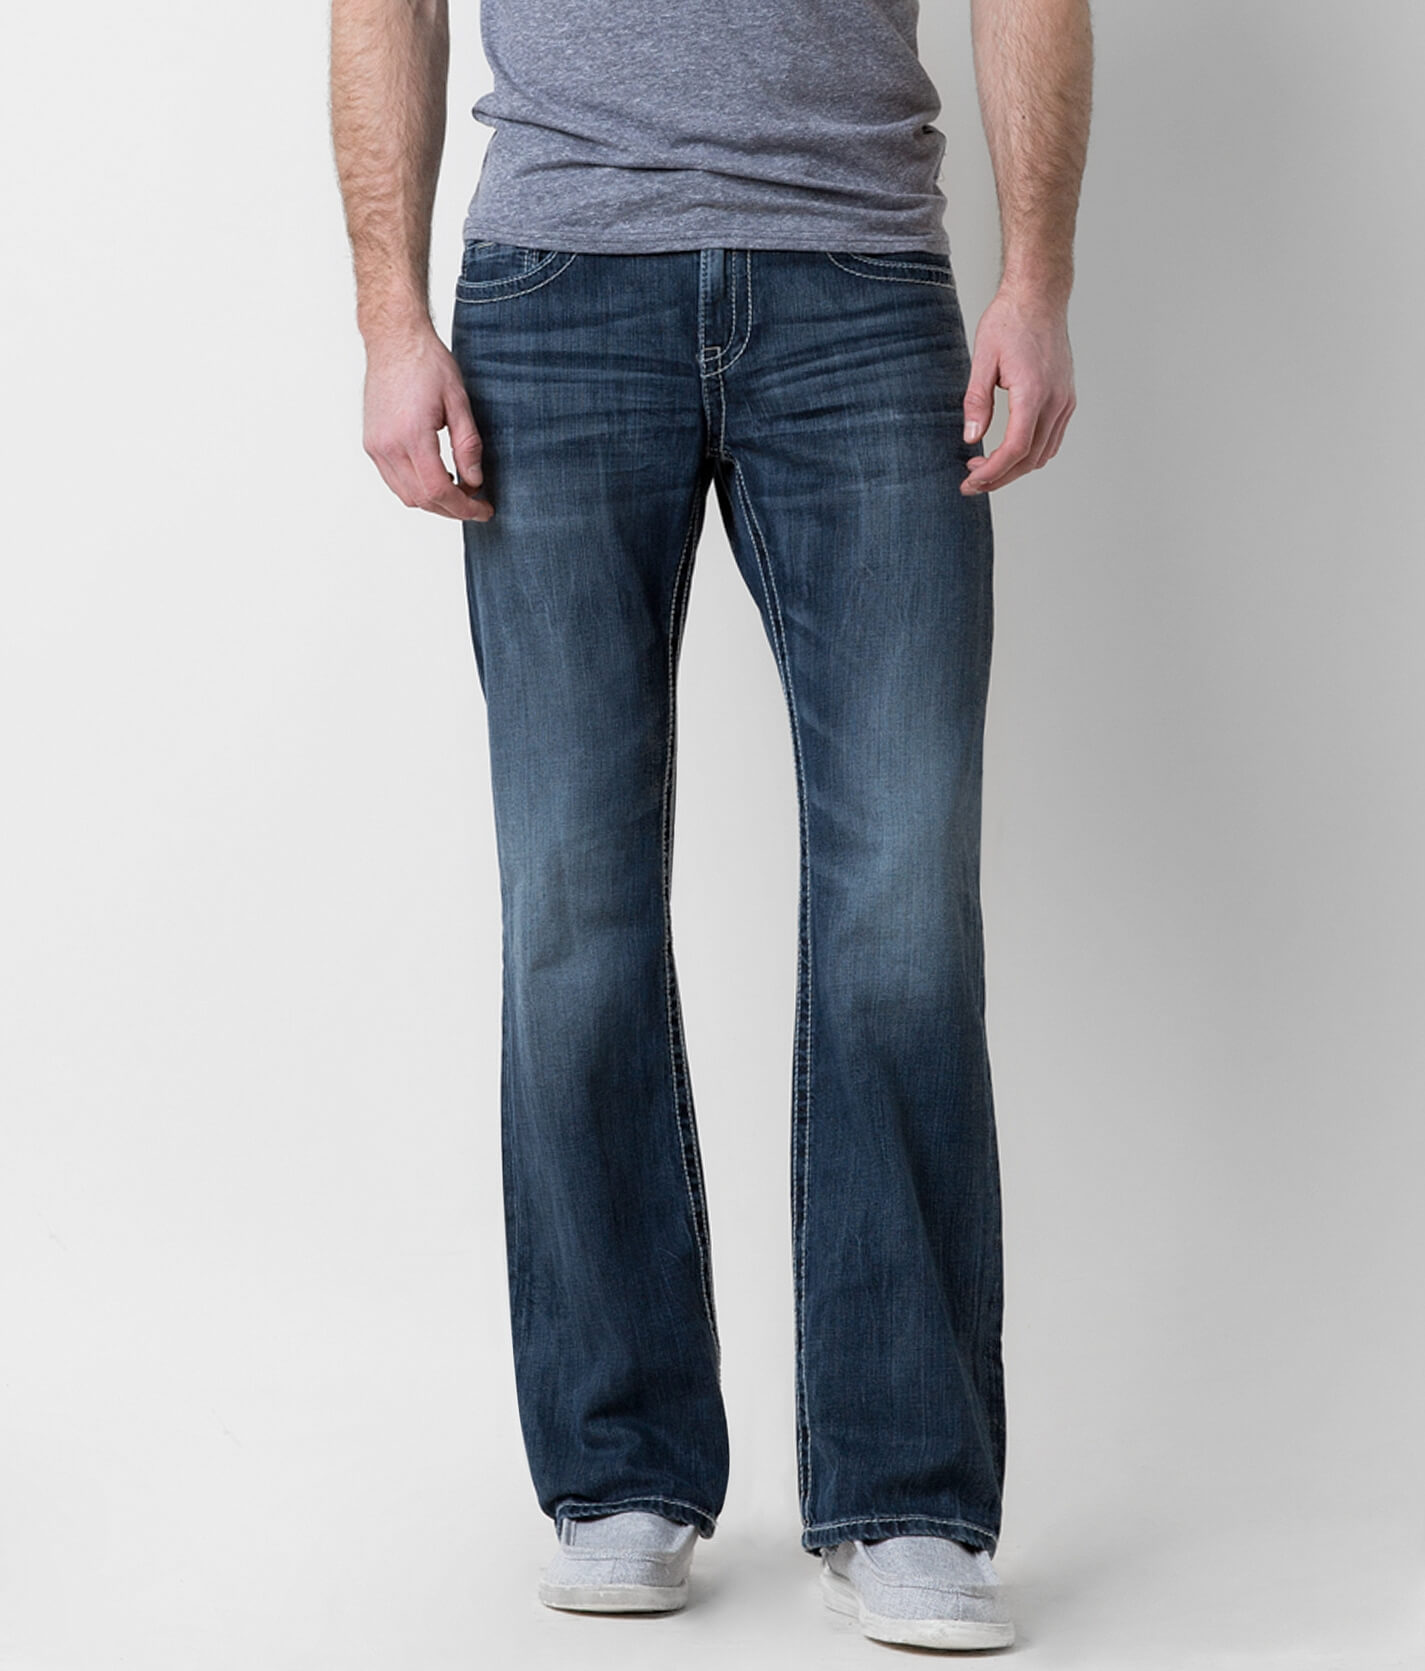 bke jeans mens